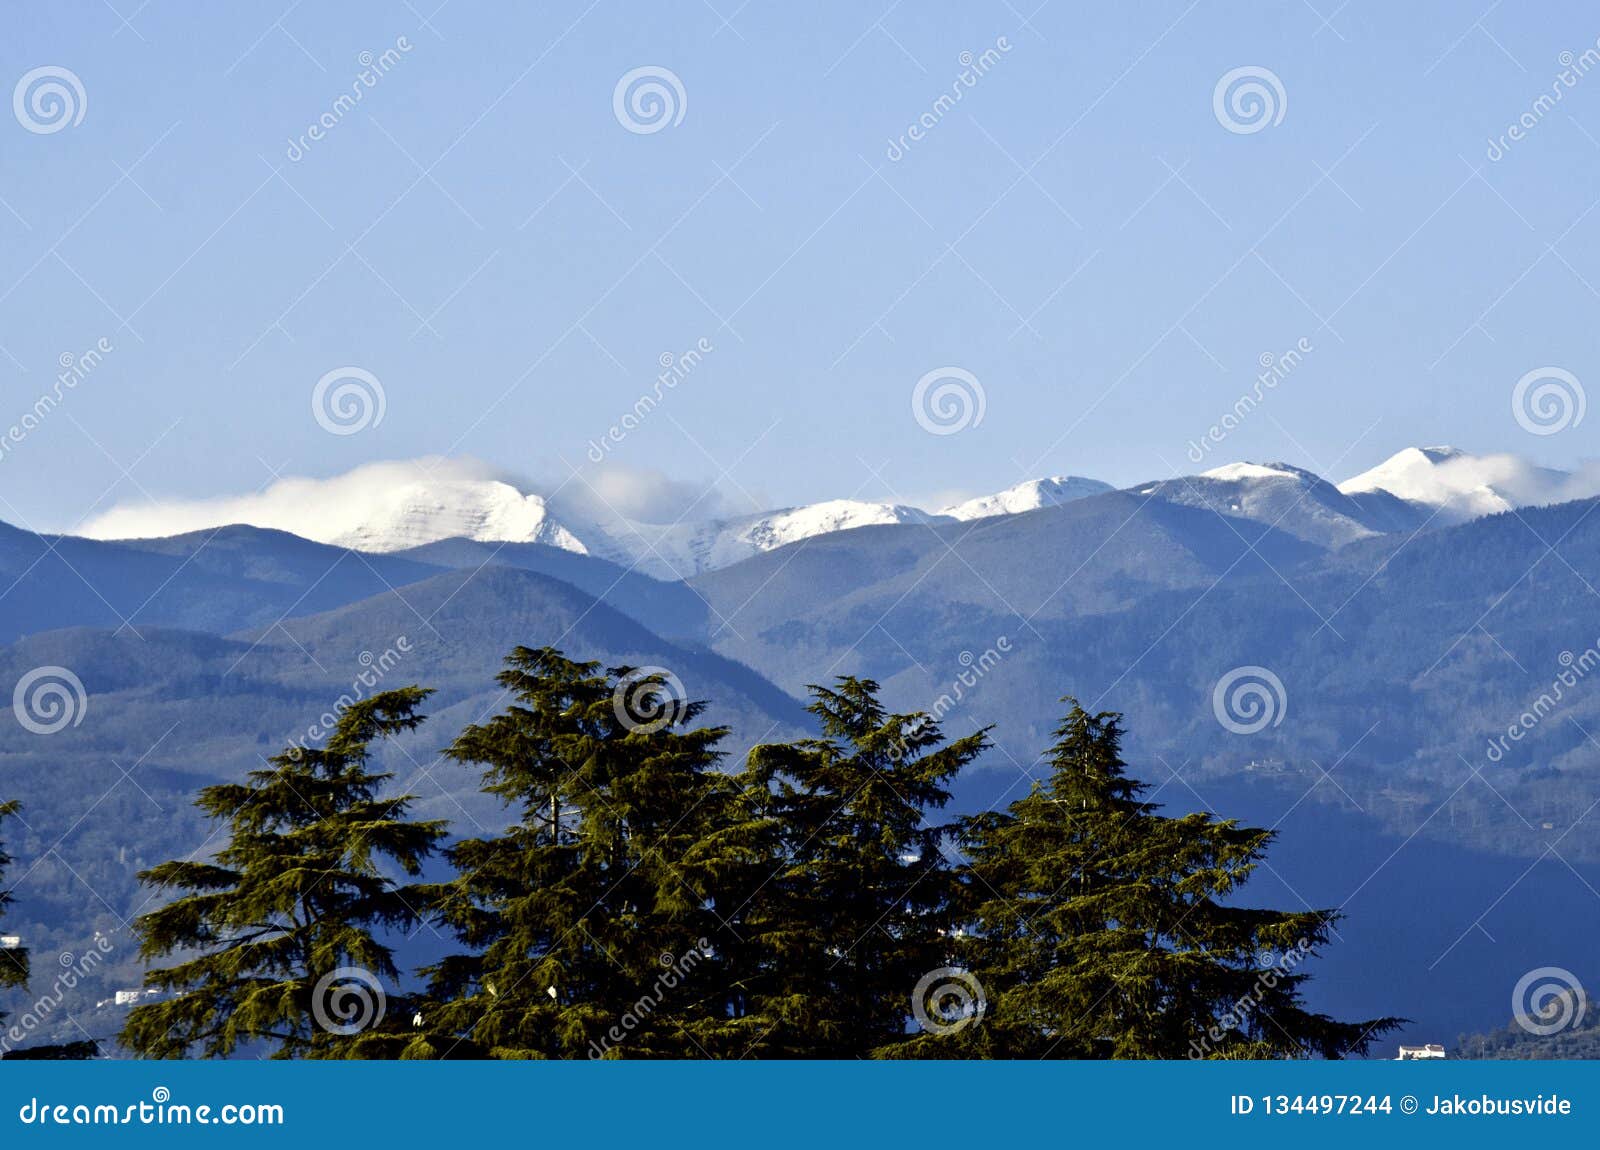 first snow on montagna pistoiese ridge seen from pistoia